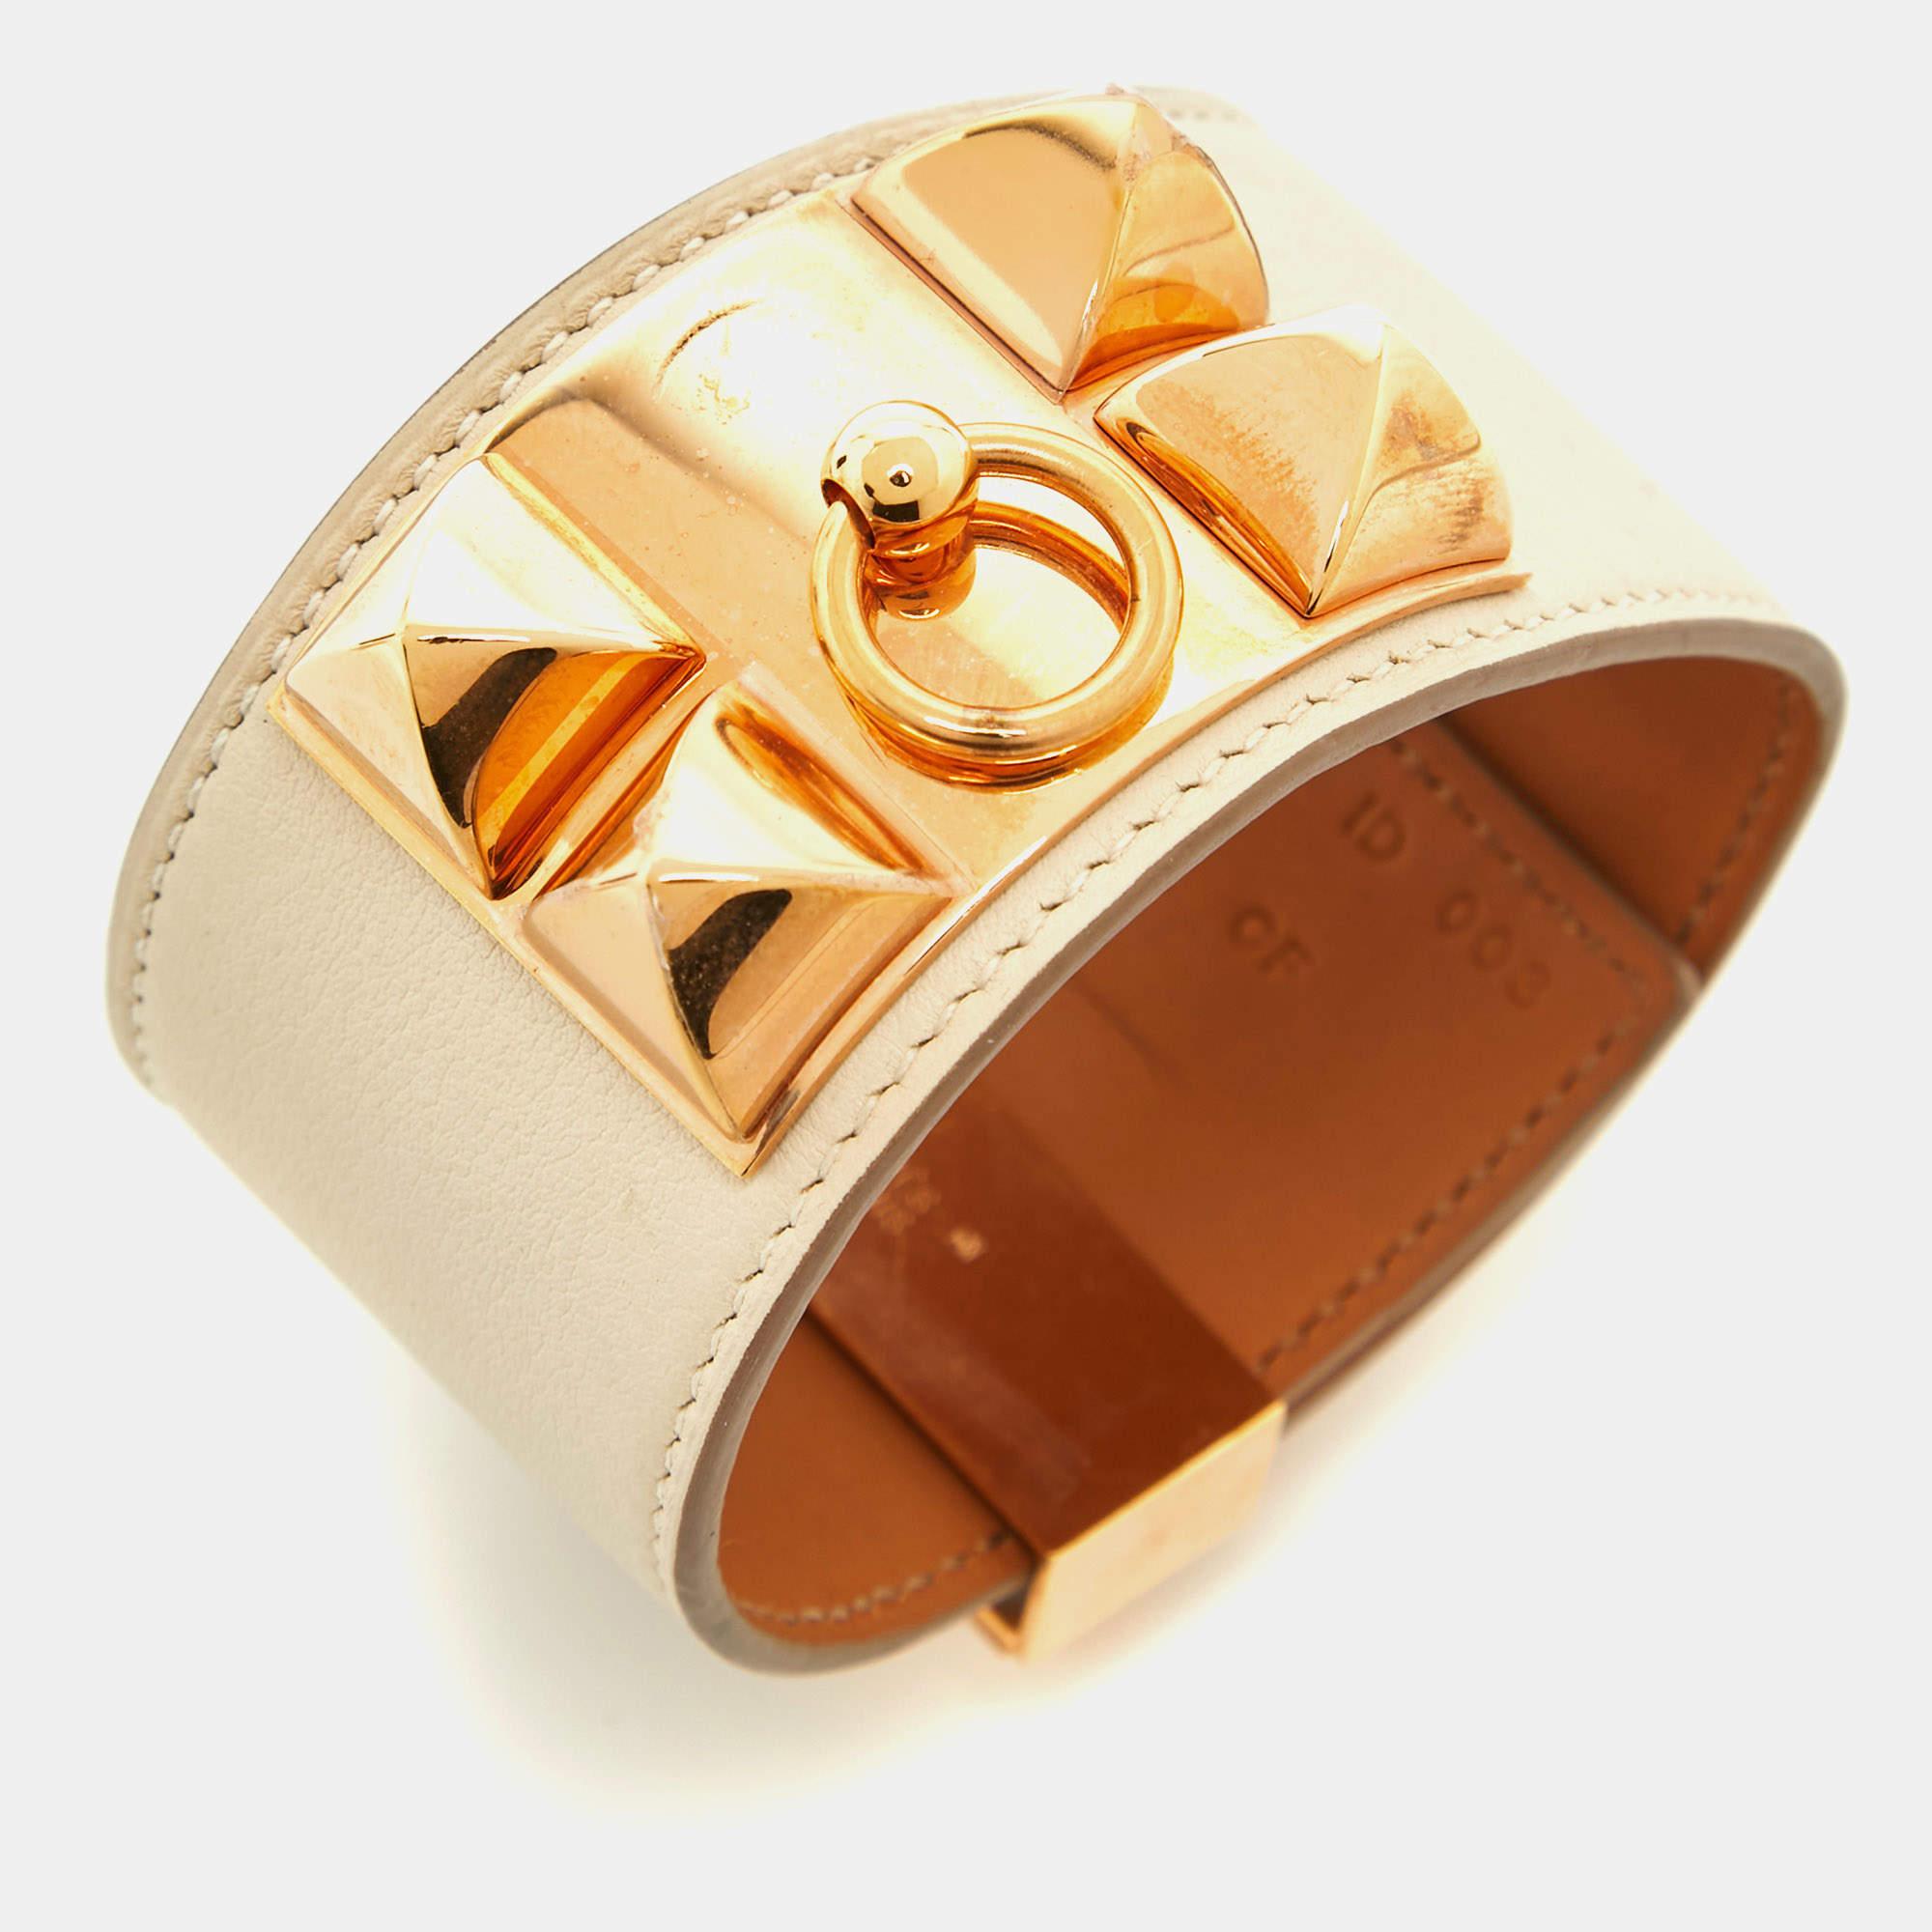 Dieses hochmoderne und schicke Armband von Hermes ist ein Beispiel für zeitgenössische Mode. Das luxuriöse Design ist mit verschiedenen Elementen versehen, die der Kreation einen edlen Touch verleihen. Dieses süße Stück sieht toll aus, wenn es mit